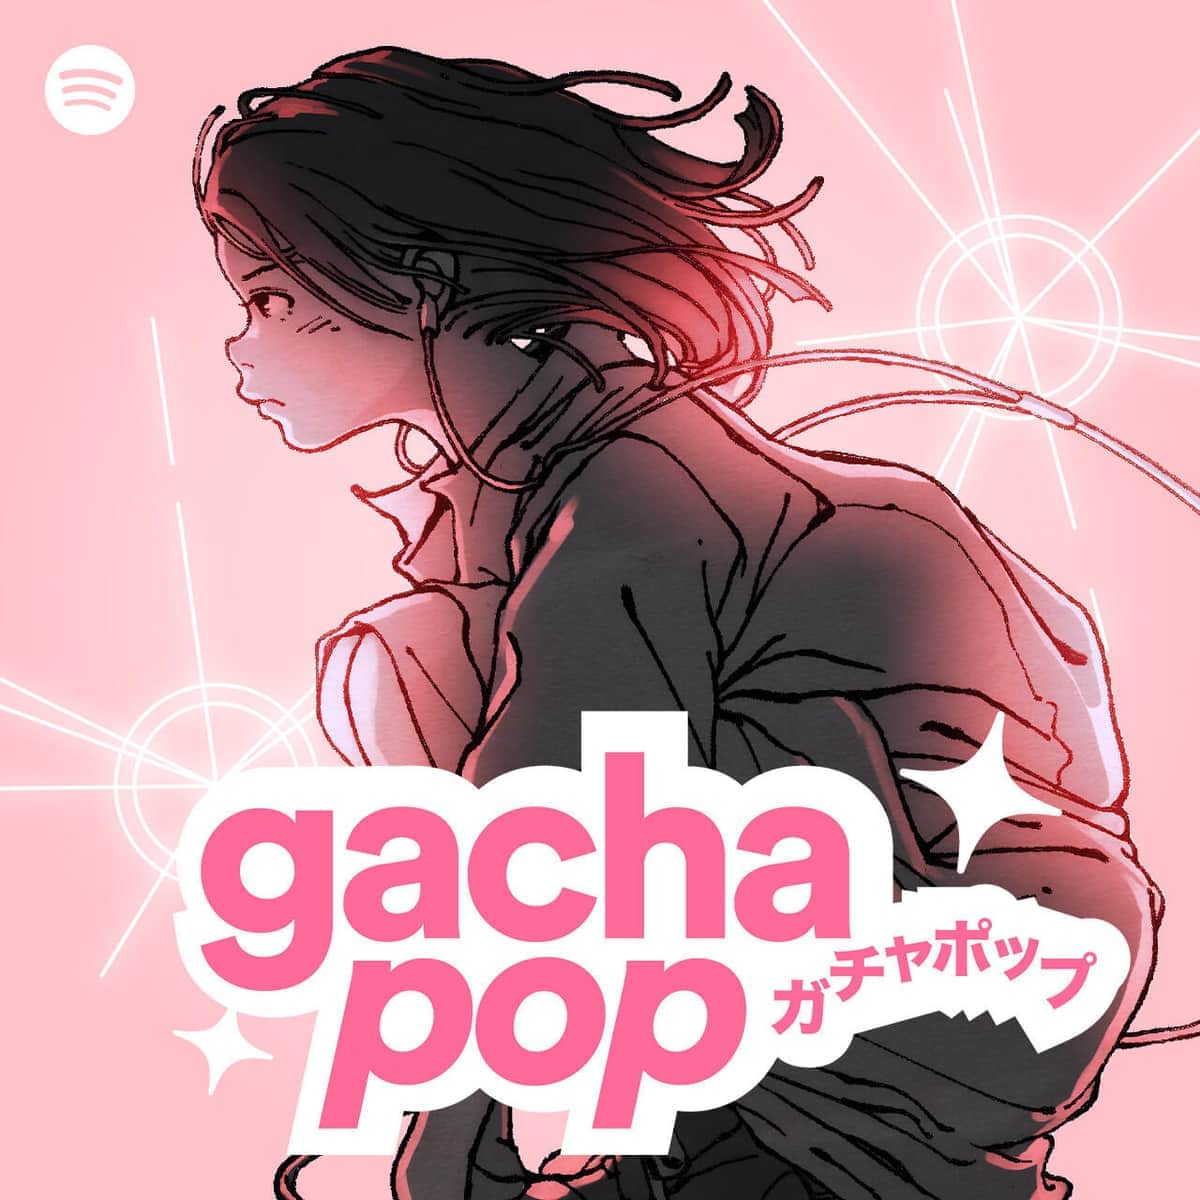 アニメもボカロもシティポップも...「海外で聞かれる日本の楽曲」なぜ集約？　Spotify「Gacha Pop」に詰まった多様性